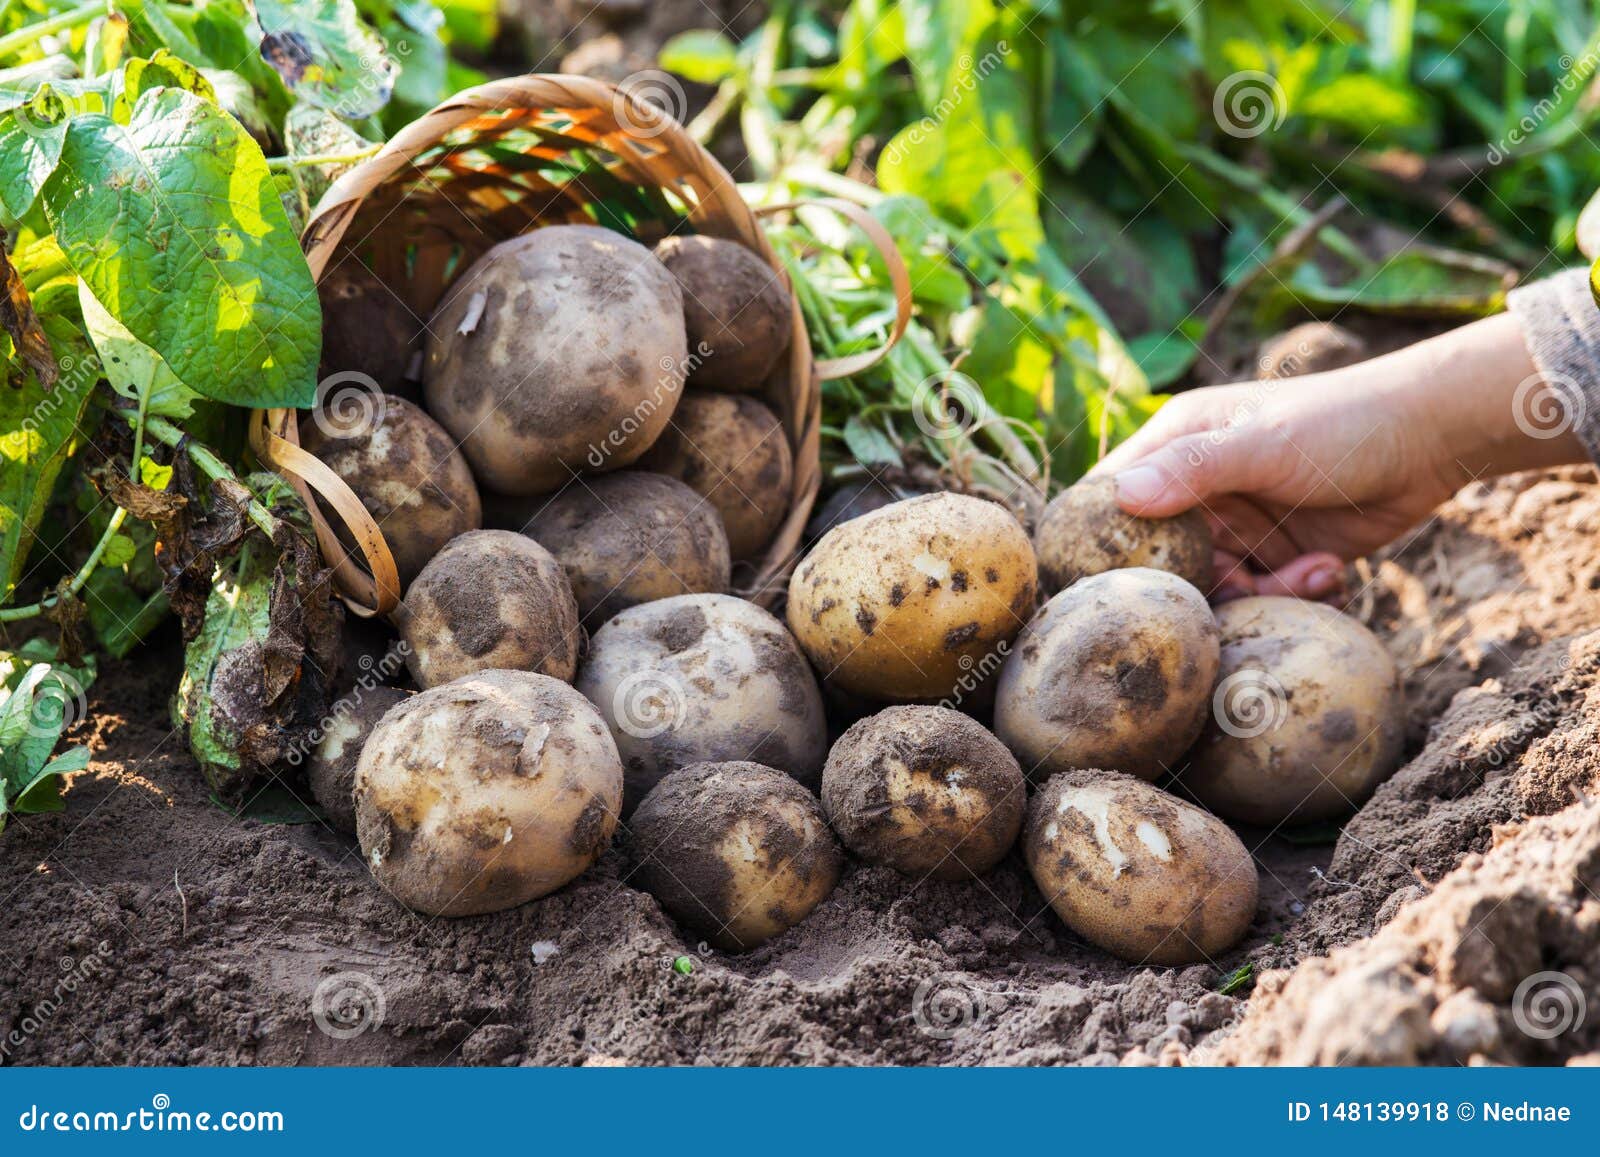 Чем обработать картофель от фитофторы перед посадкой. Фитофтора на картофеле. Фитофтороз картофеля фото. Картошка обыкновенная. Картофель семенной обработанный.